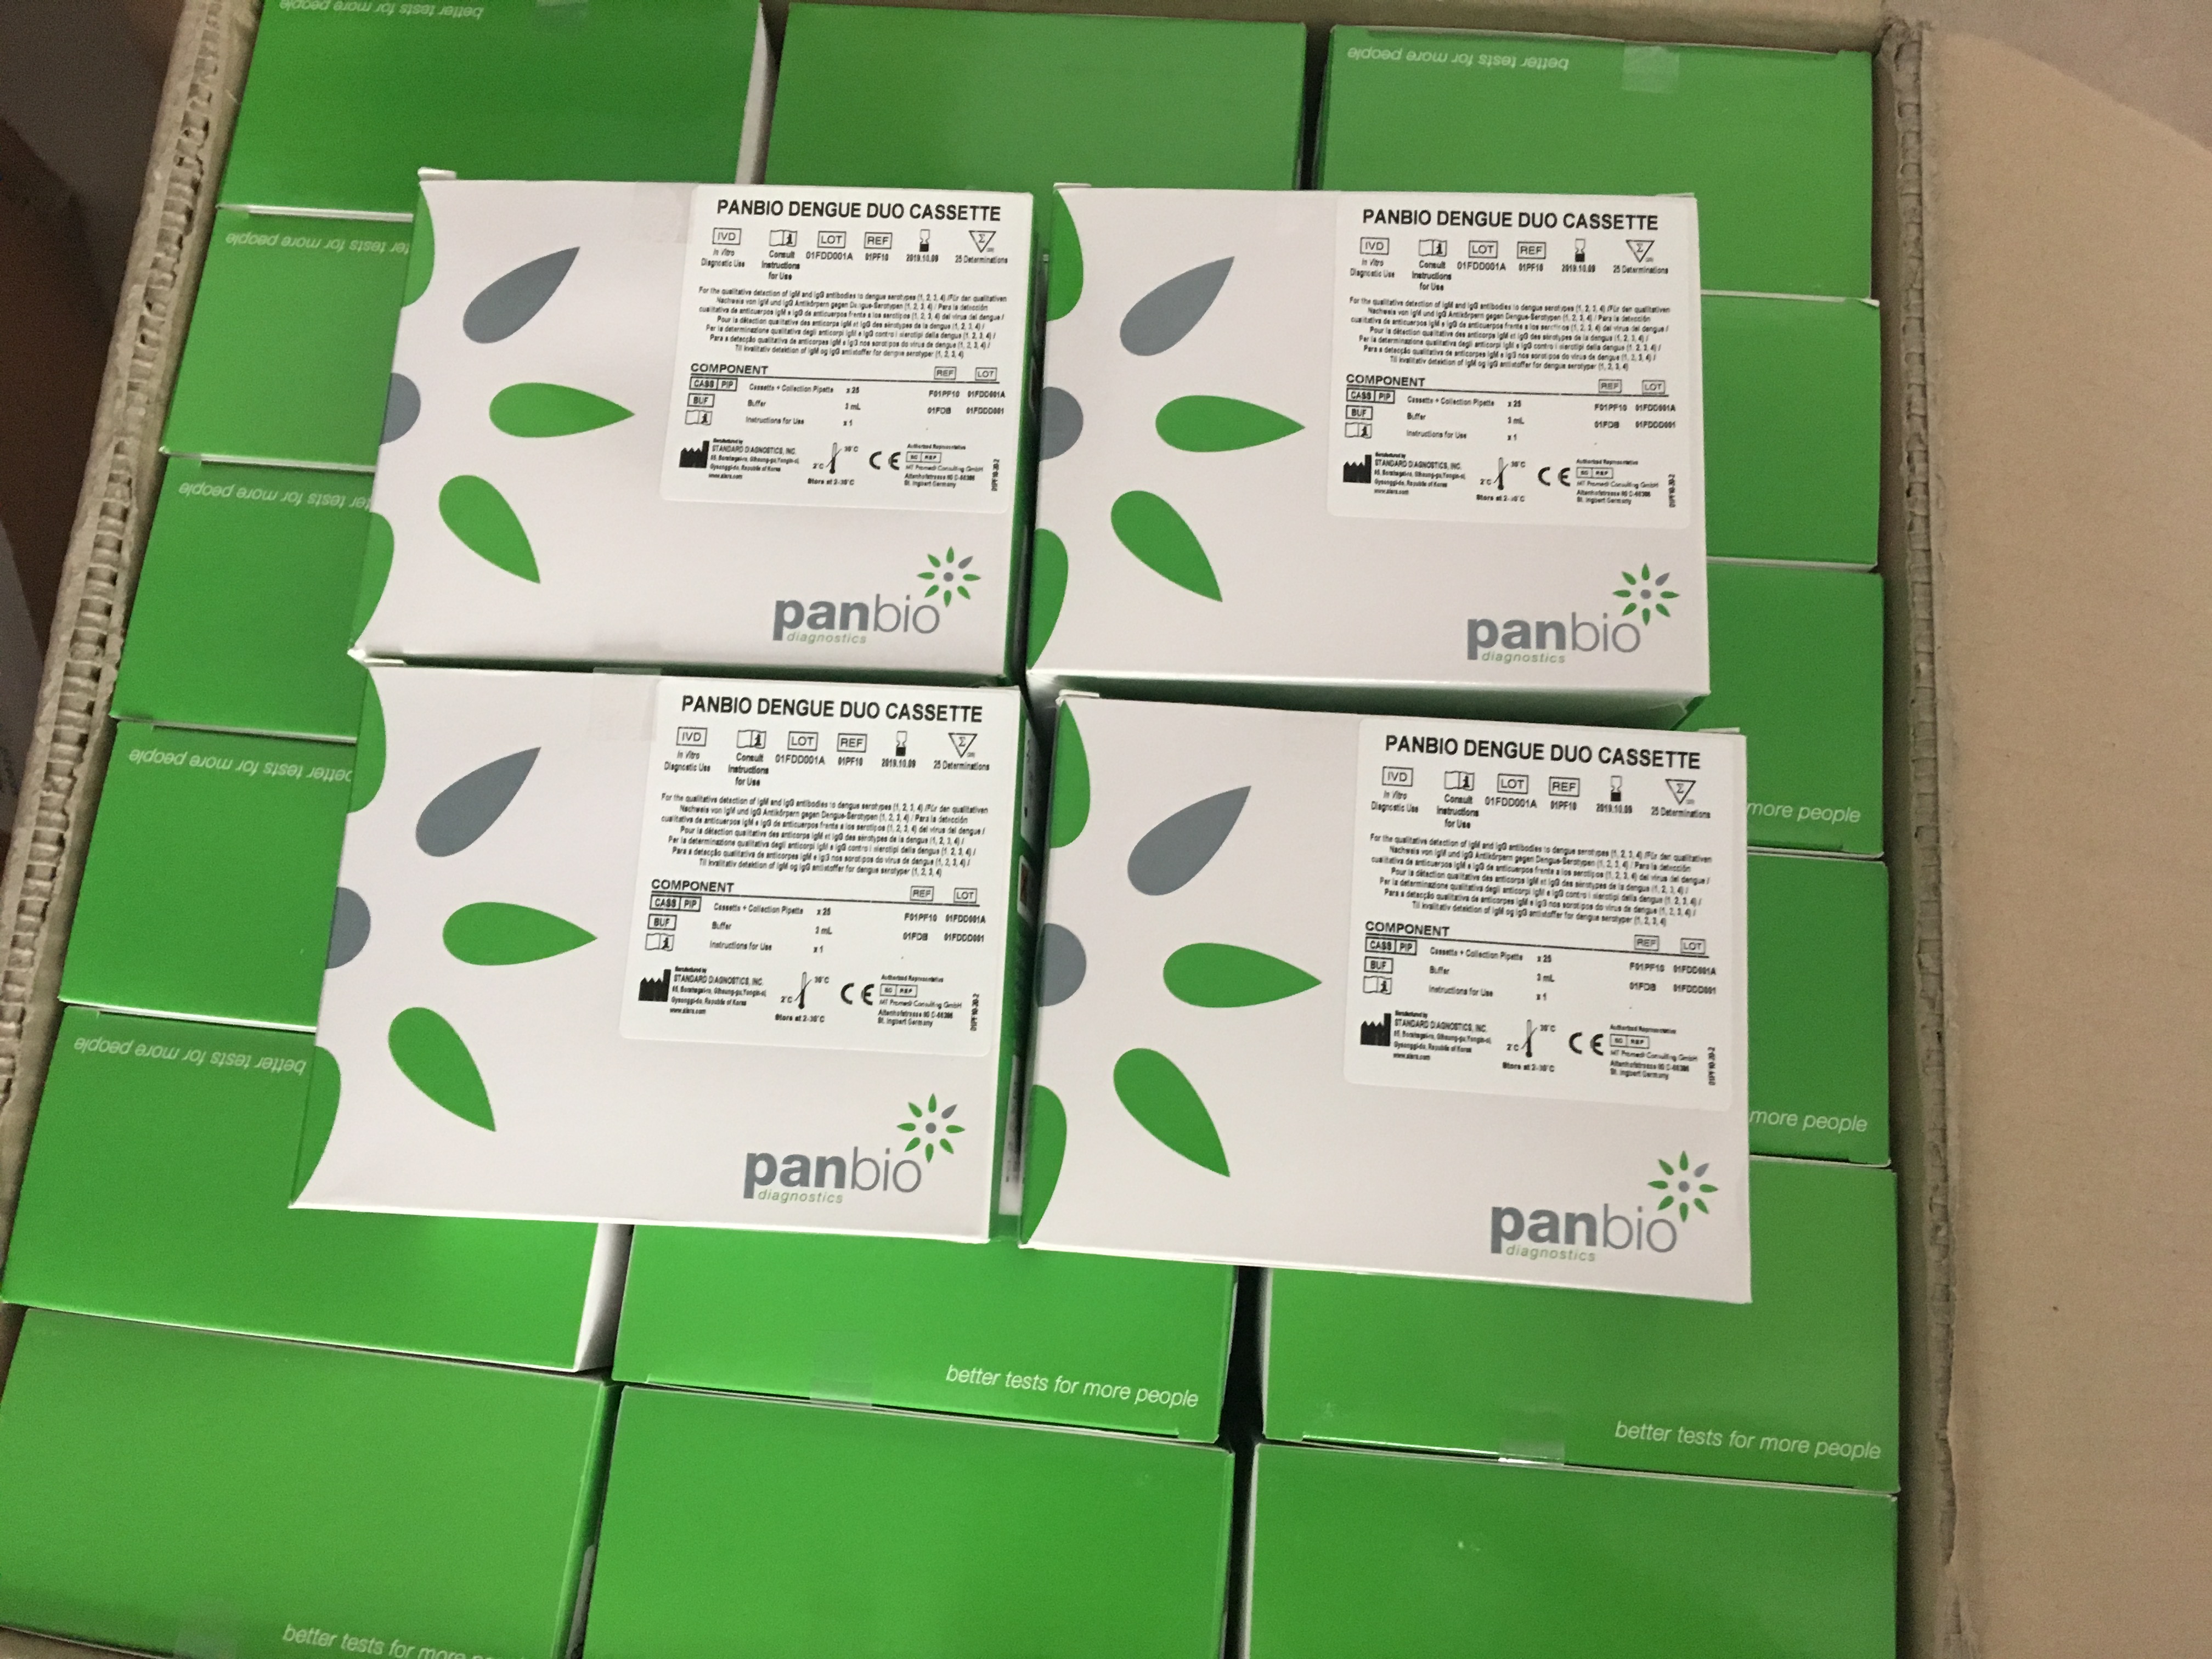 登革熱早期檢測試劑盒PANBIO